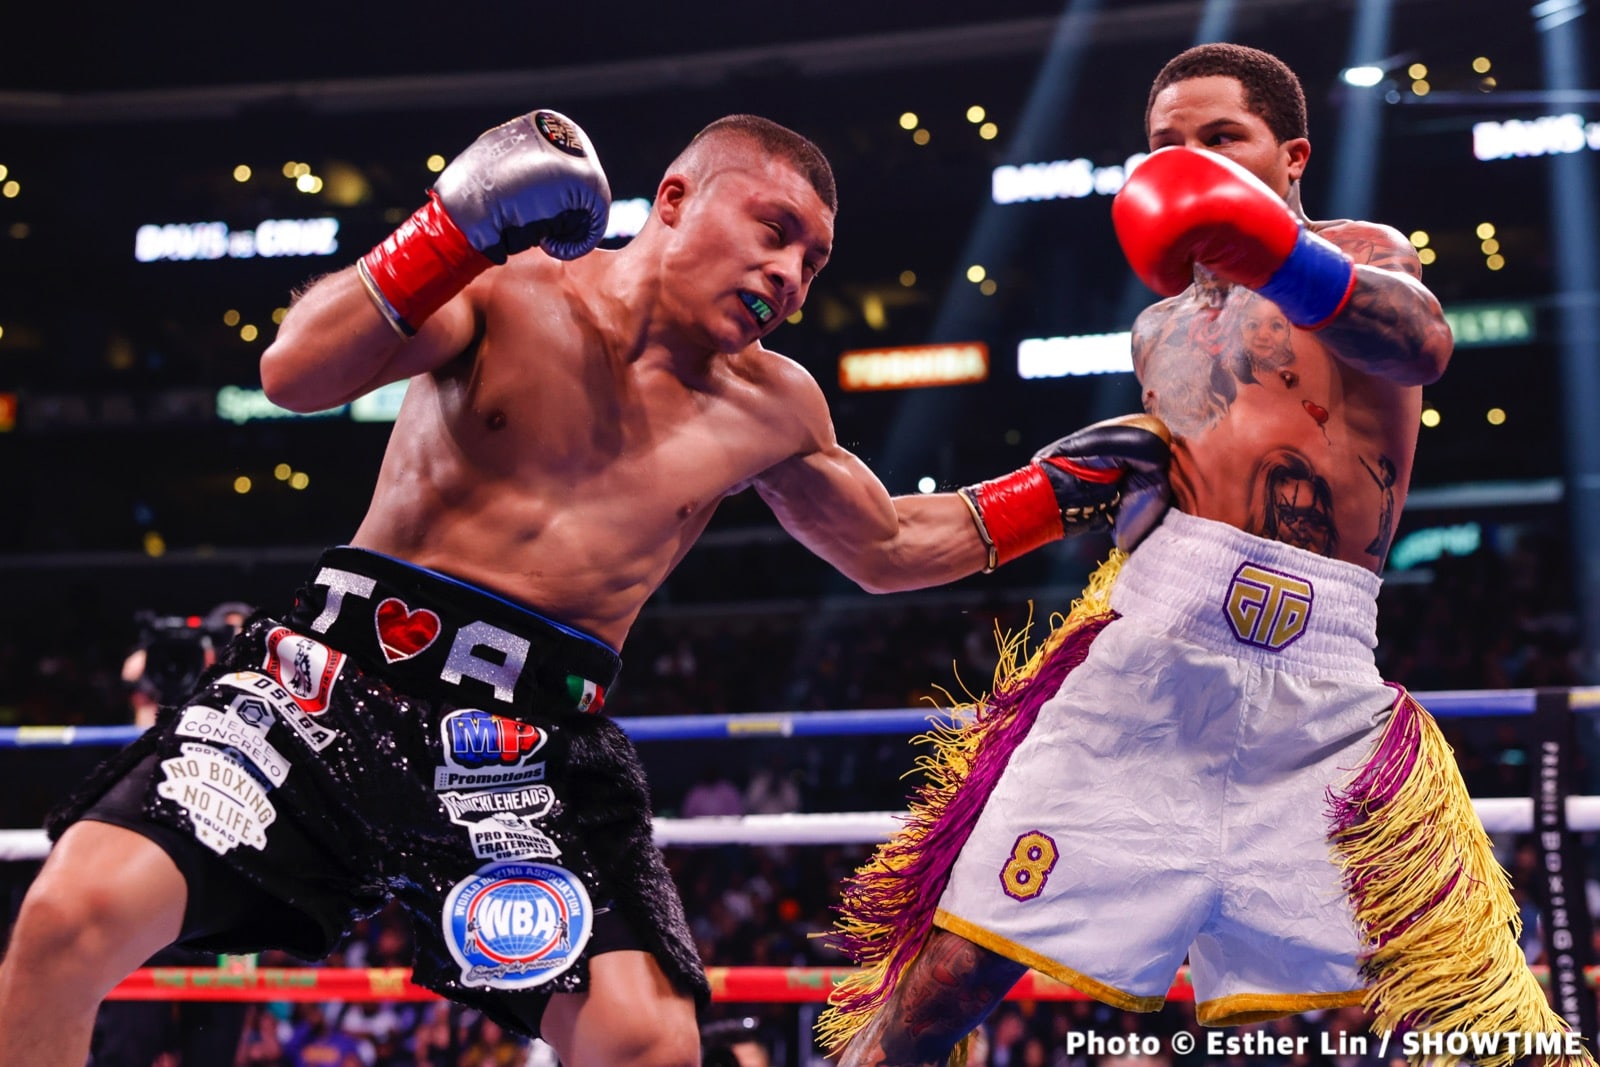 Oscar De La Hoya boxing image / photo